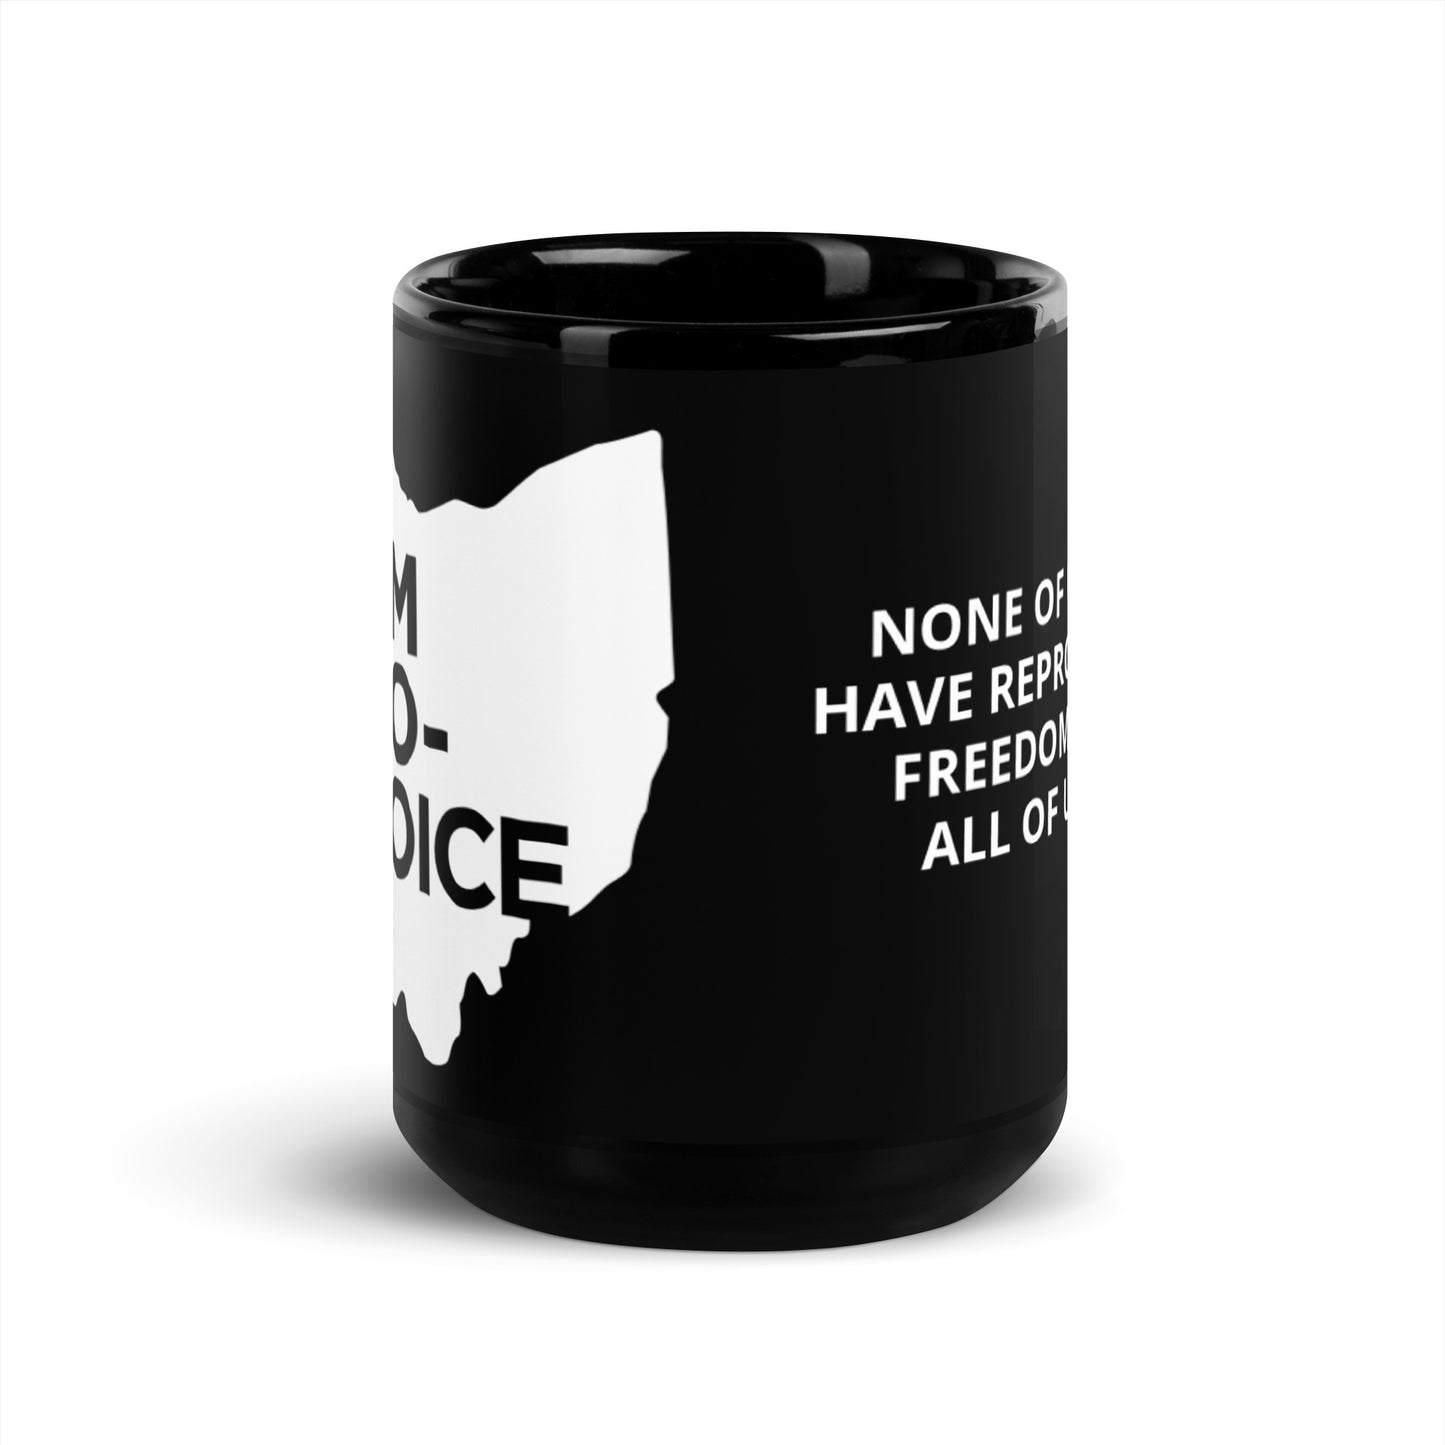 Pro-Choice Ohio mug